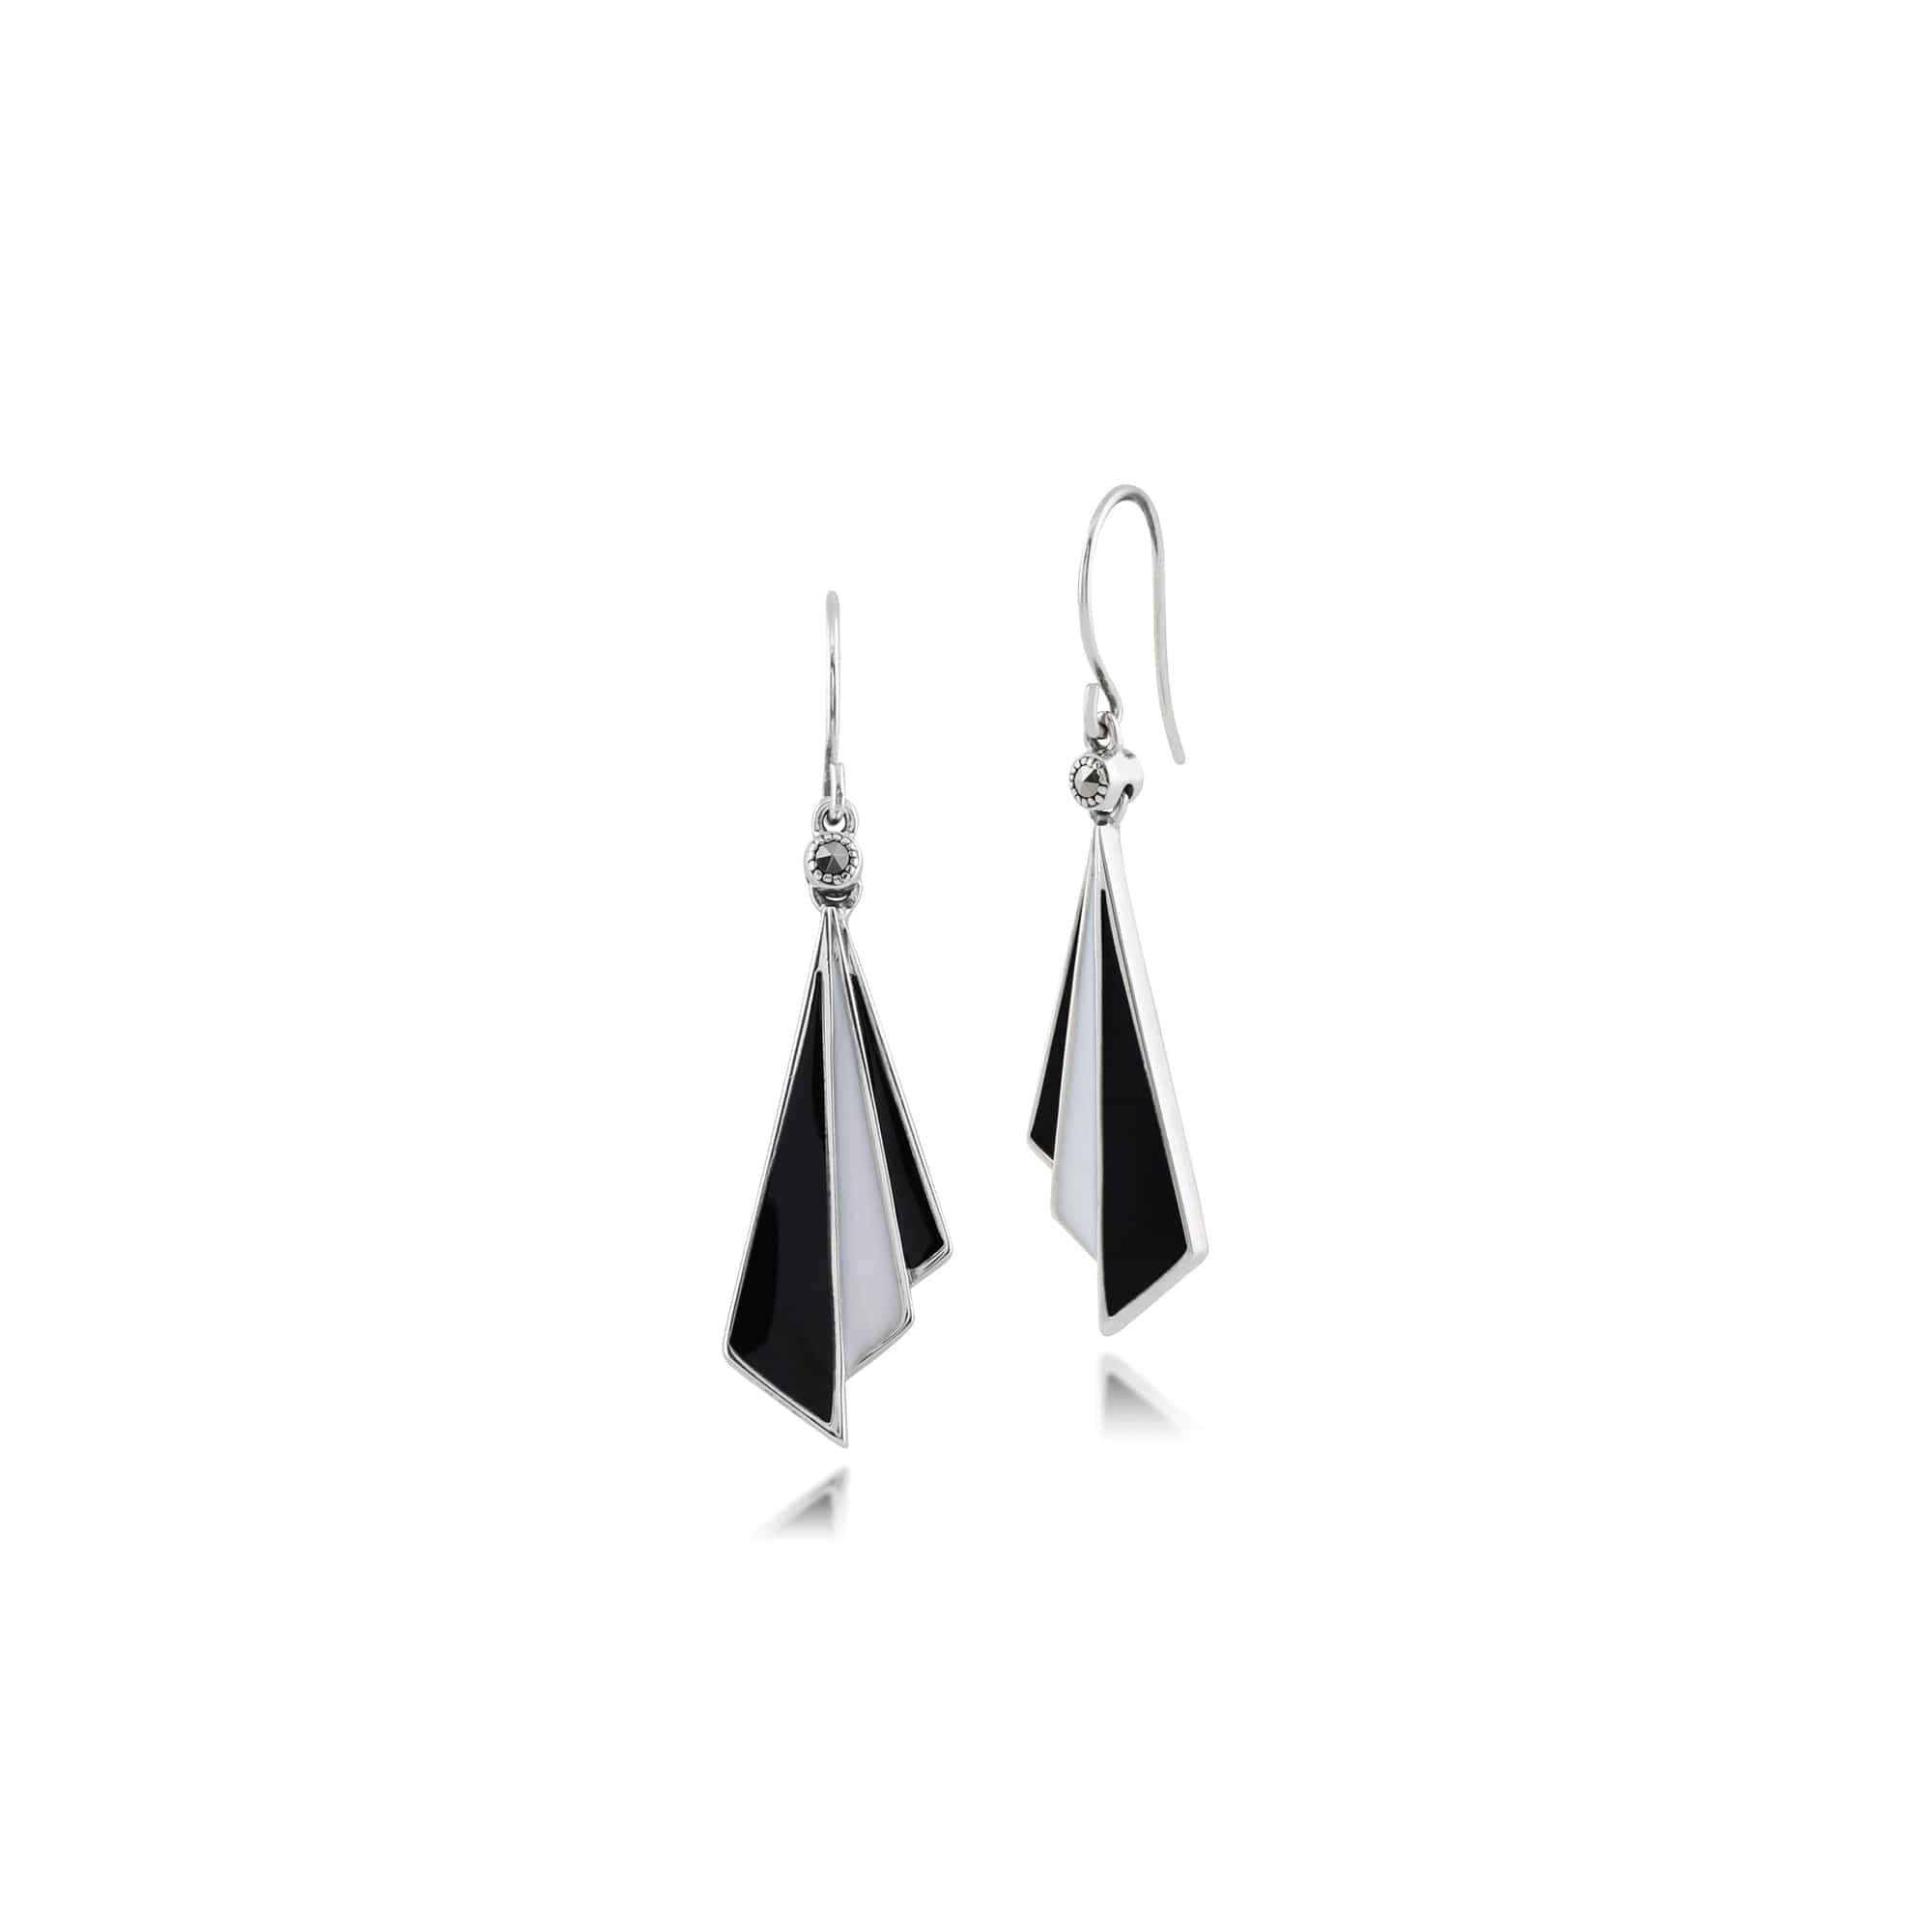 Art Deco Style Triangle Black & White Enamel Folded Fan Drop Earrings in 925 Sterling Silver - Gemondo